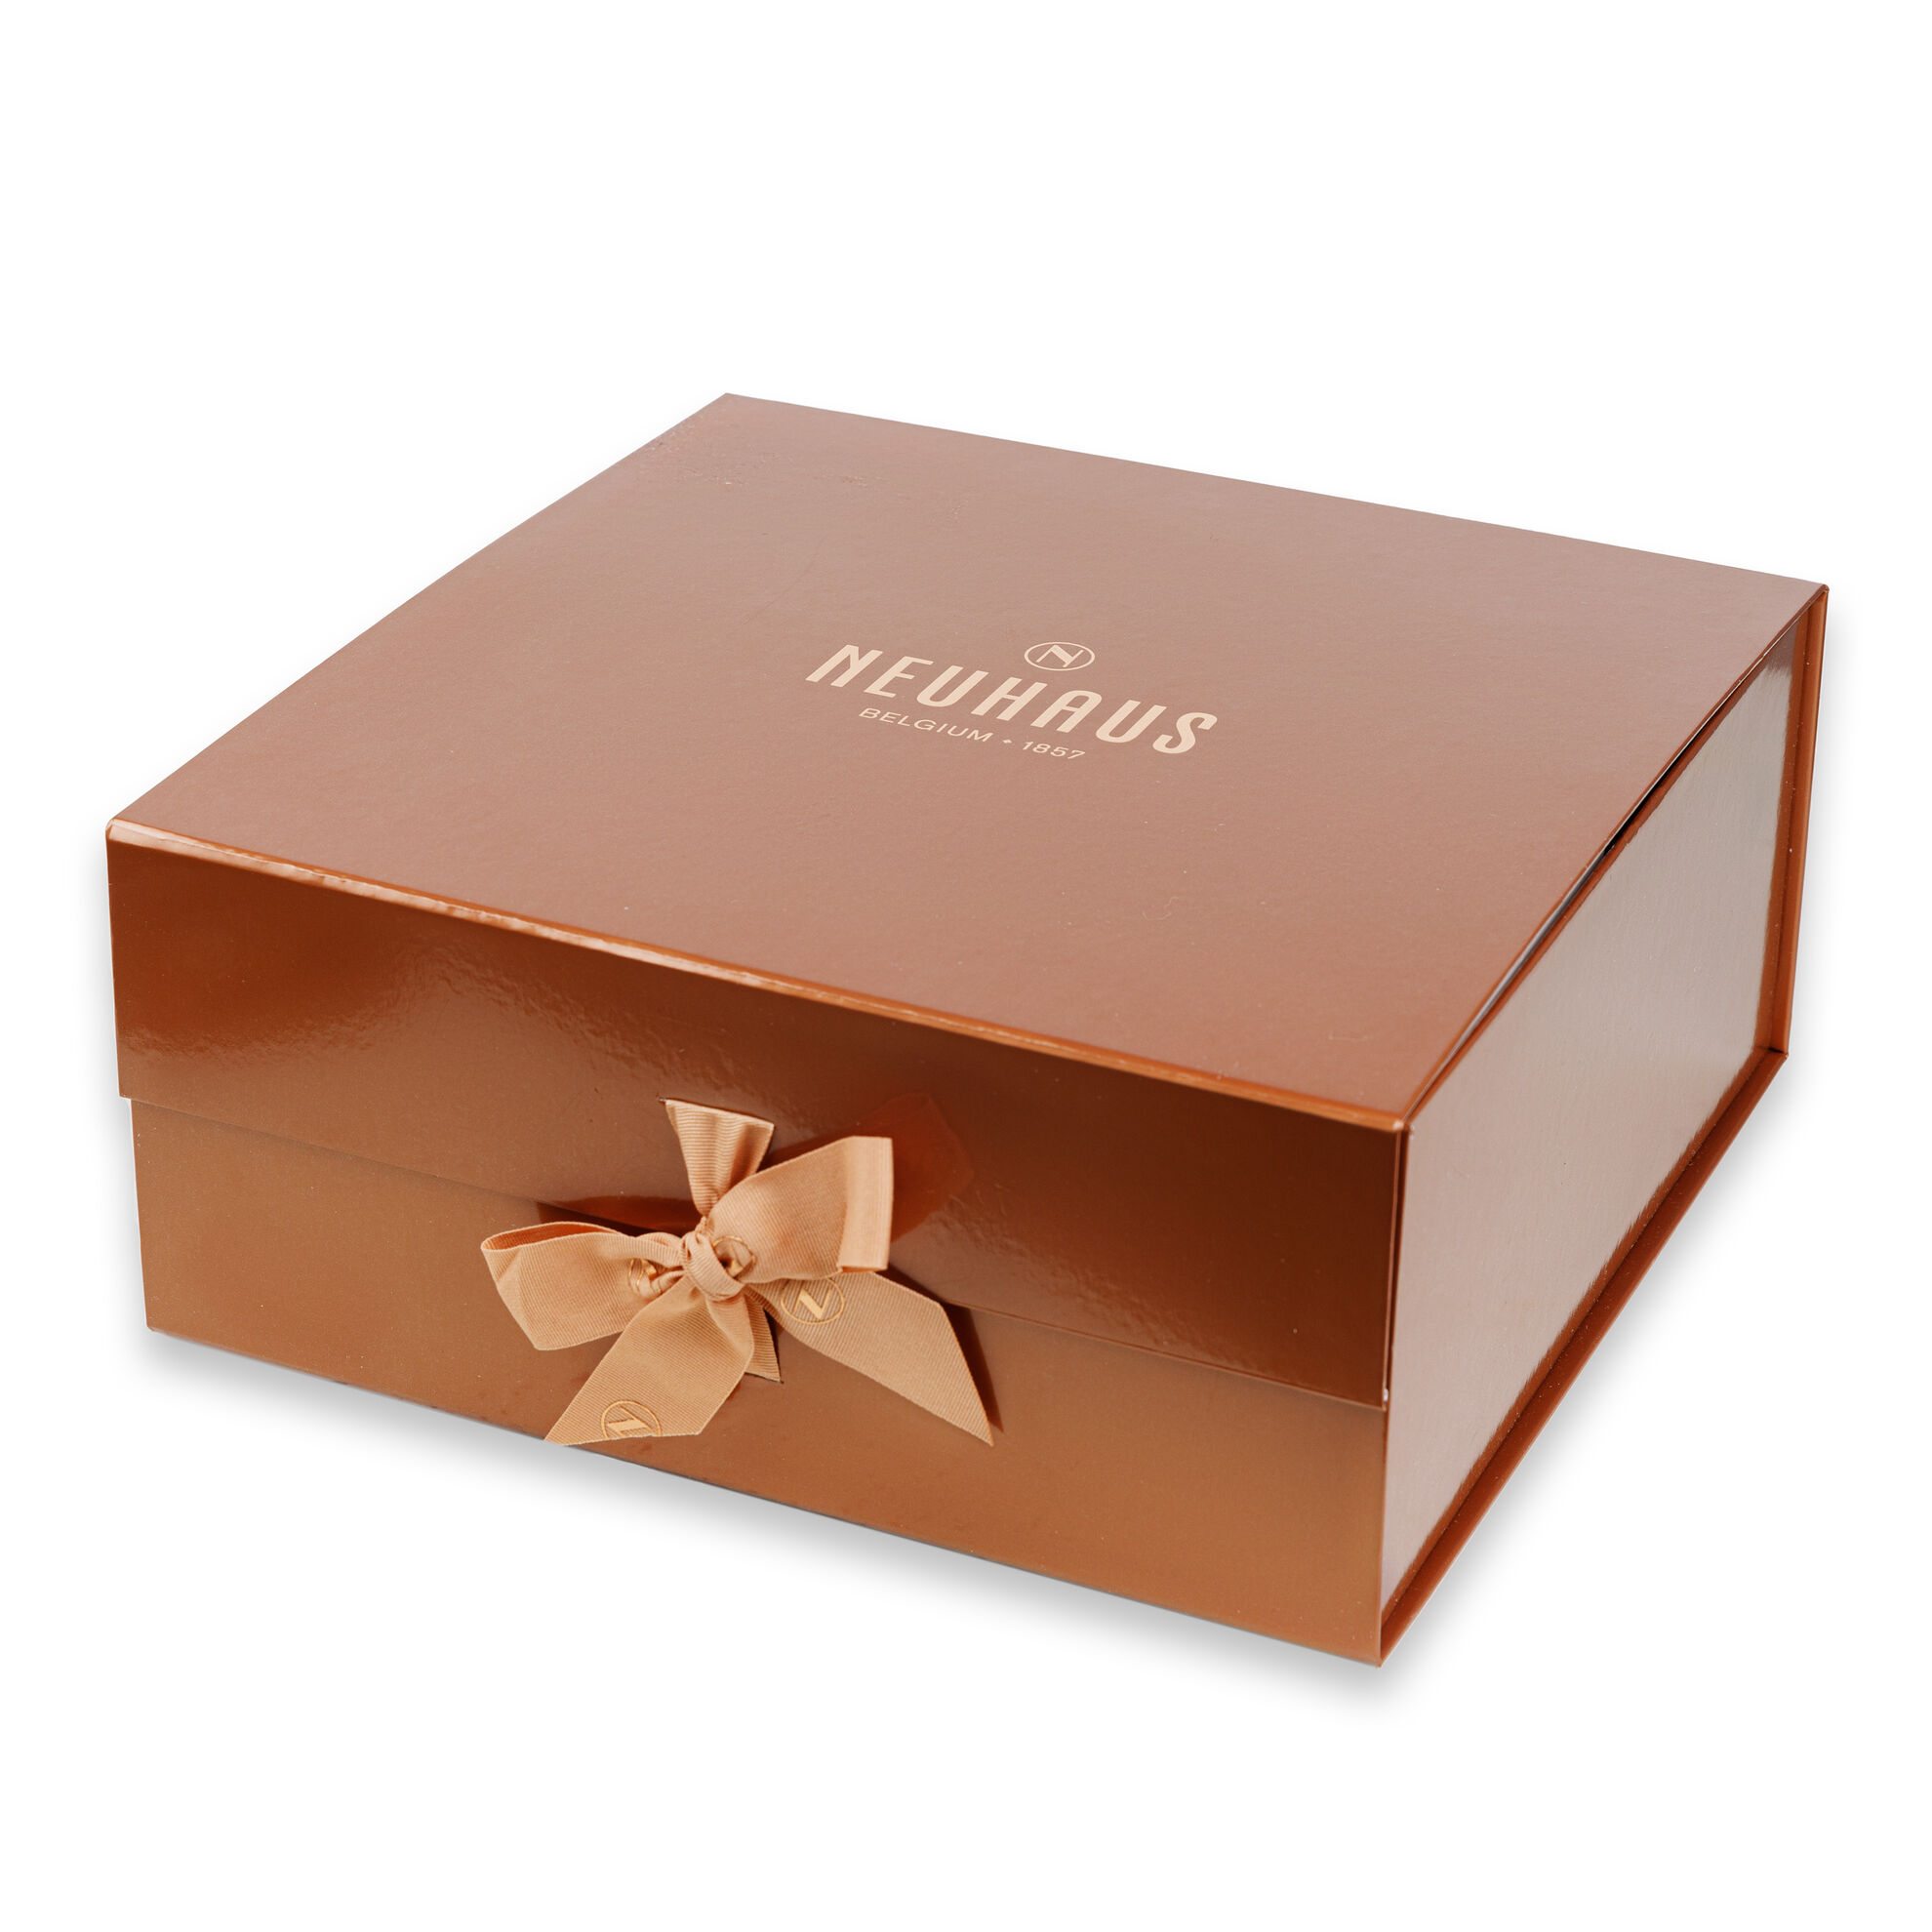 Neuhaus Love Gift Box image number 11